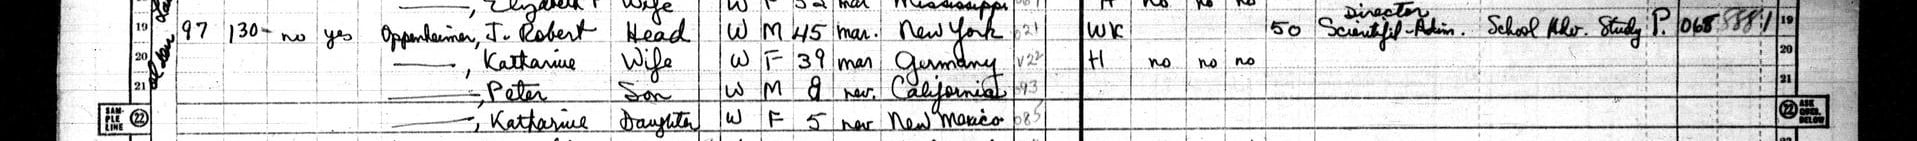 Oppenheimer och hans familj listades i 1950 års amerikanska folkräkning på MyHeritage